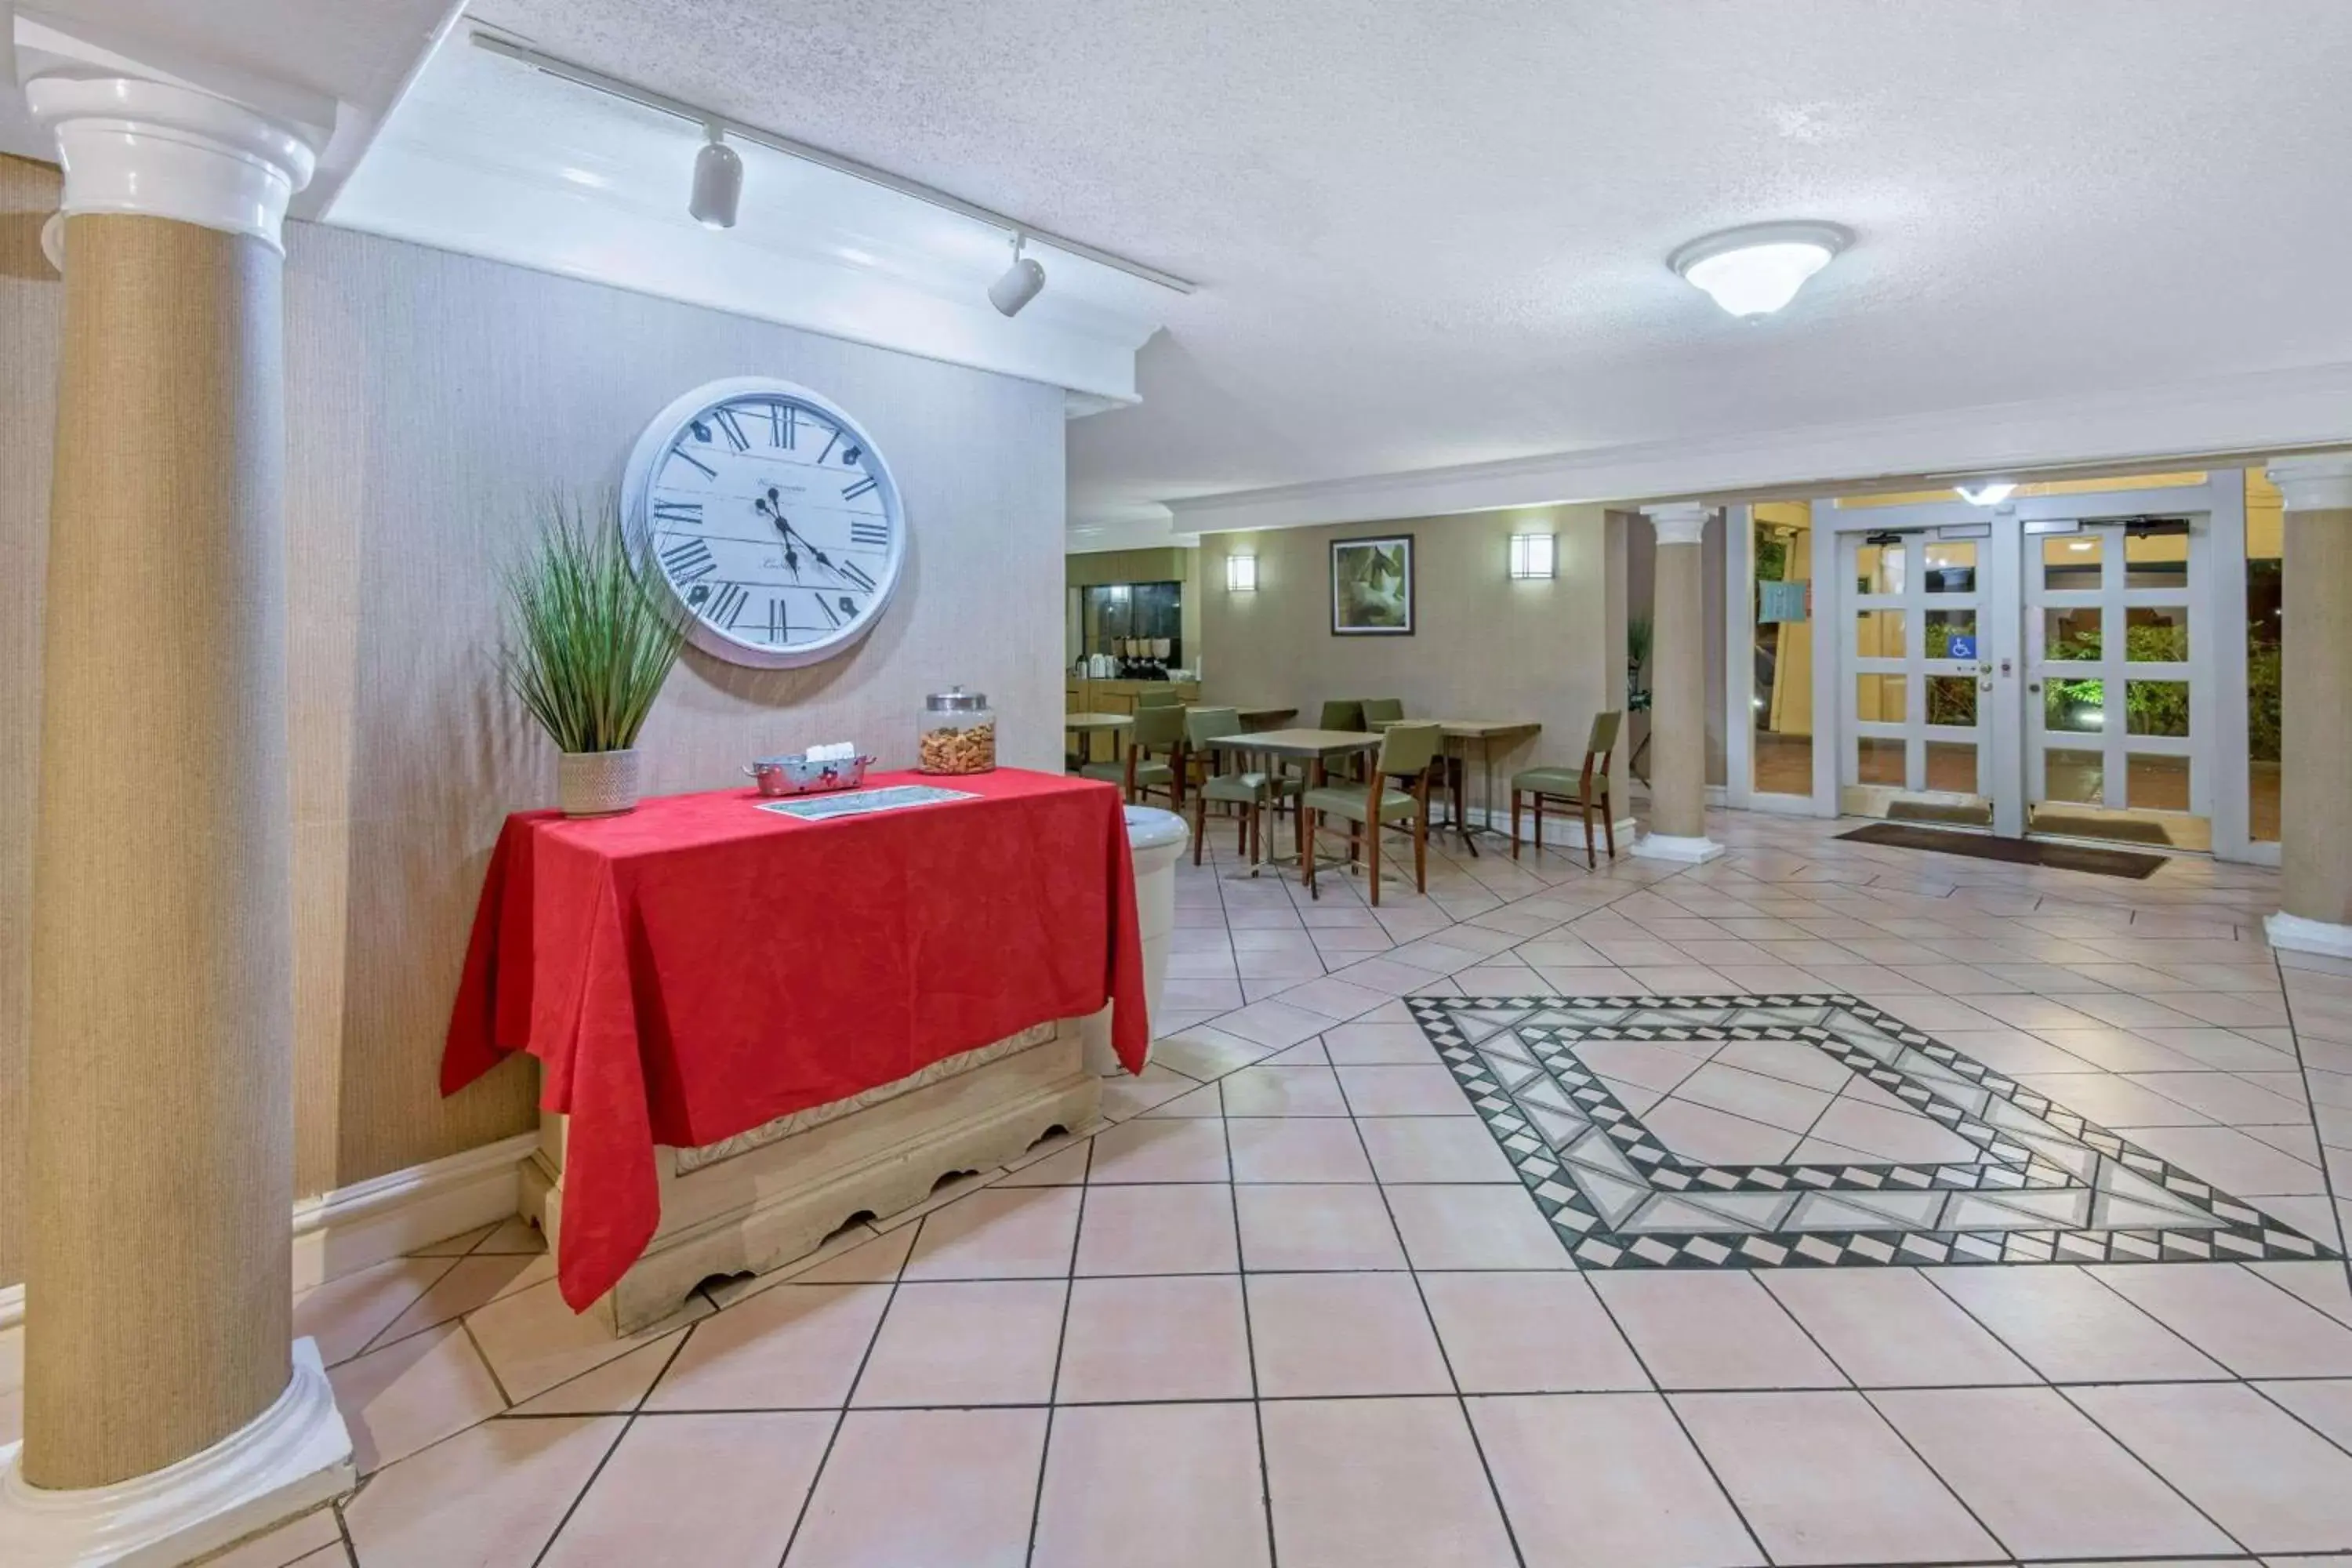 Lobby or reception in La Quinta Inn by Wyndham San Antonio I-35 N at Rittiman Rd